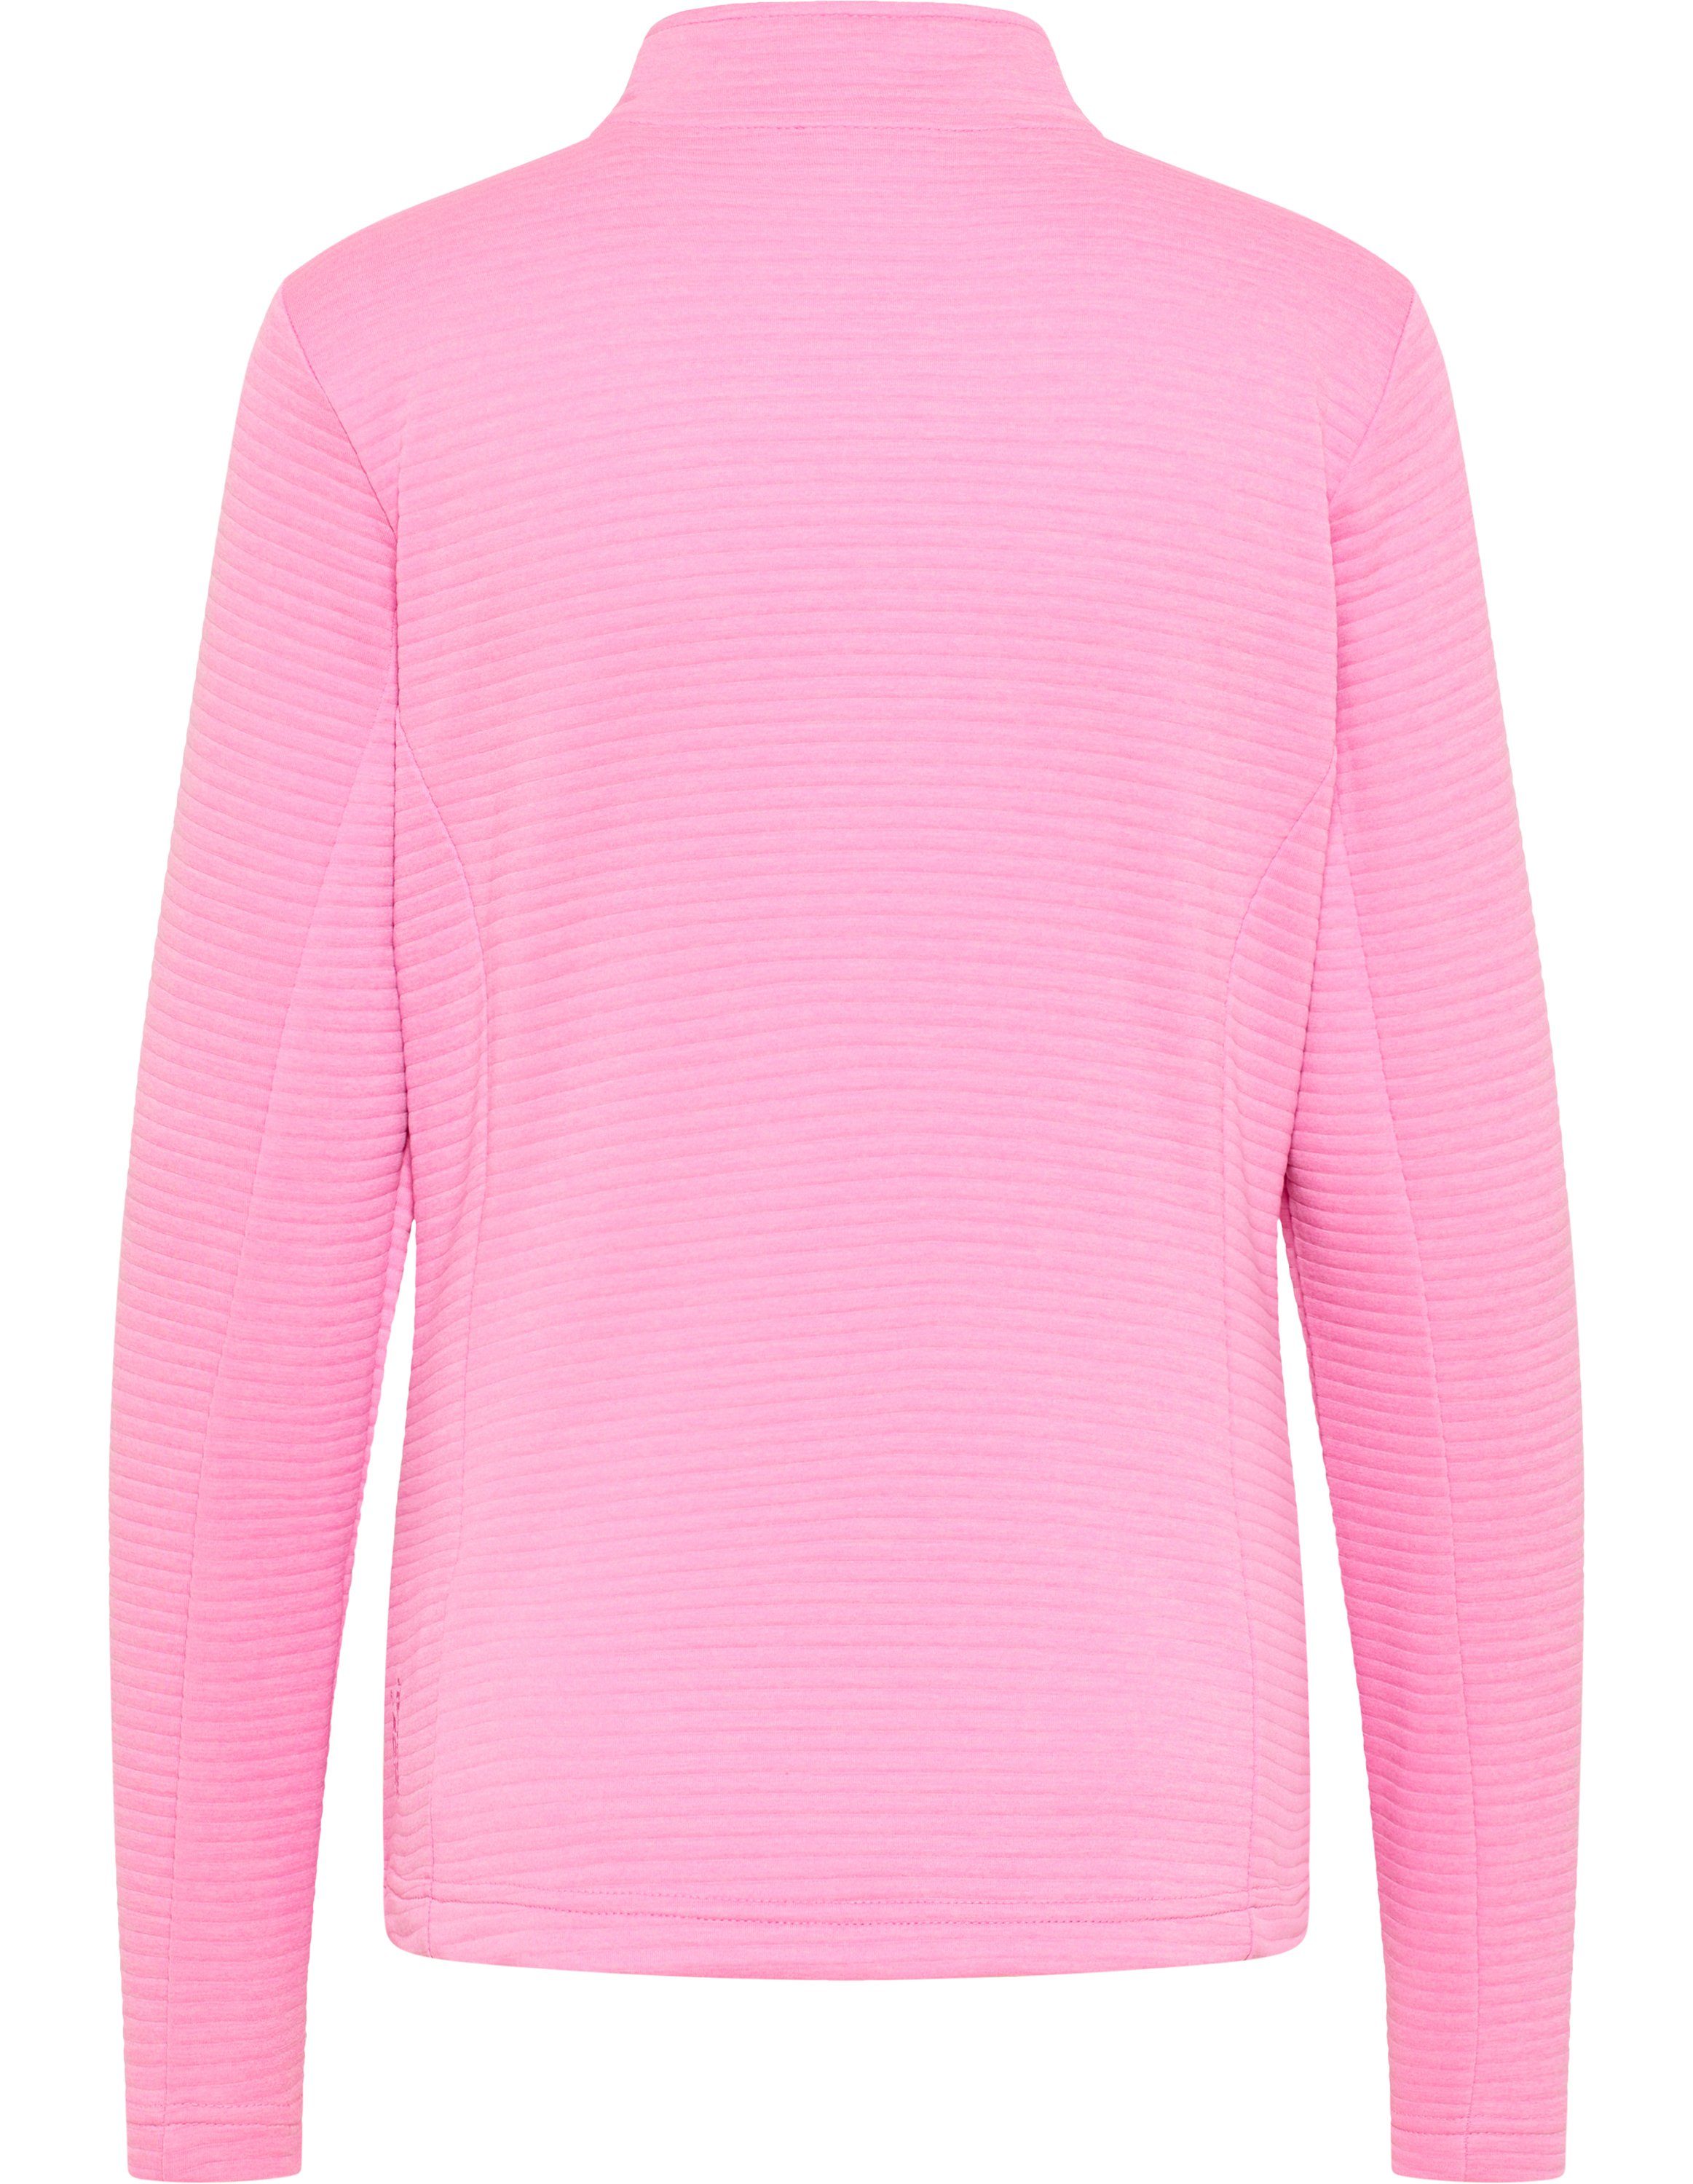 Trainingsjacke pink melange Joy Sportswear Jacke PEGGY cyclam